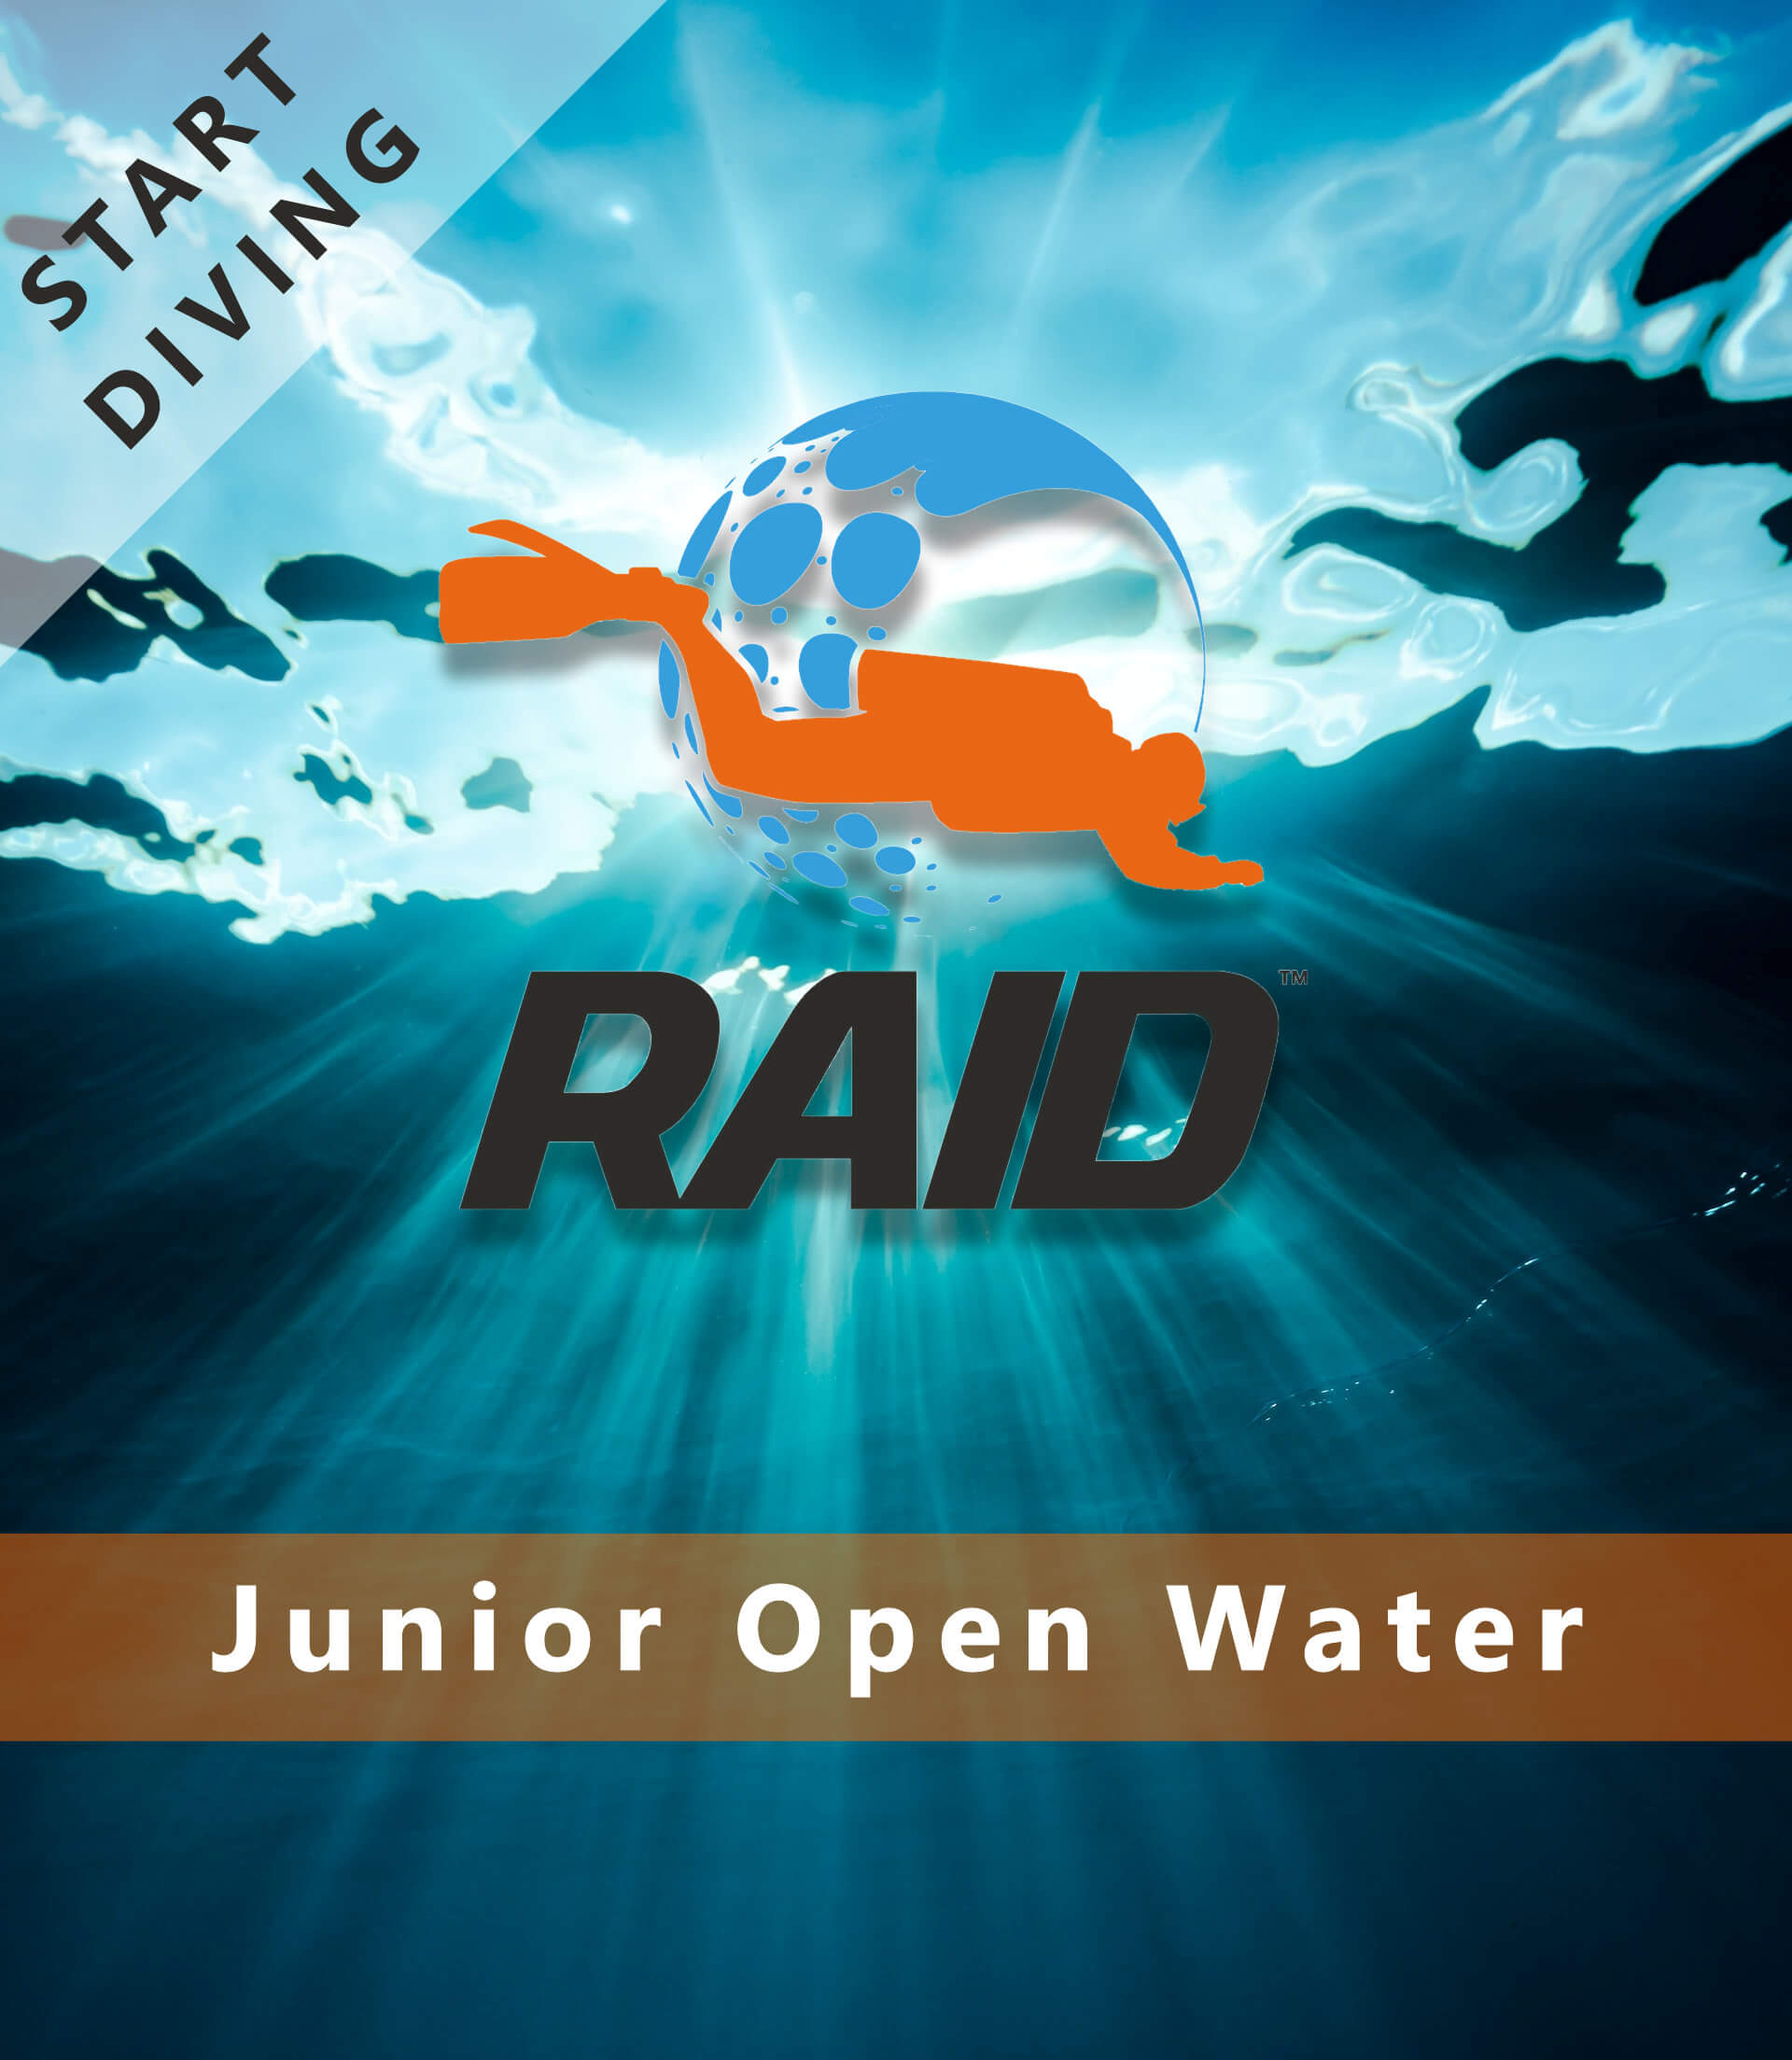 Start Diving / Junior Open Water - RAID International Scuba Diving Course